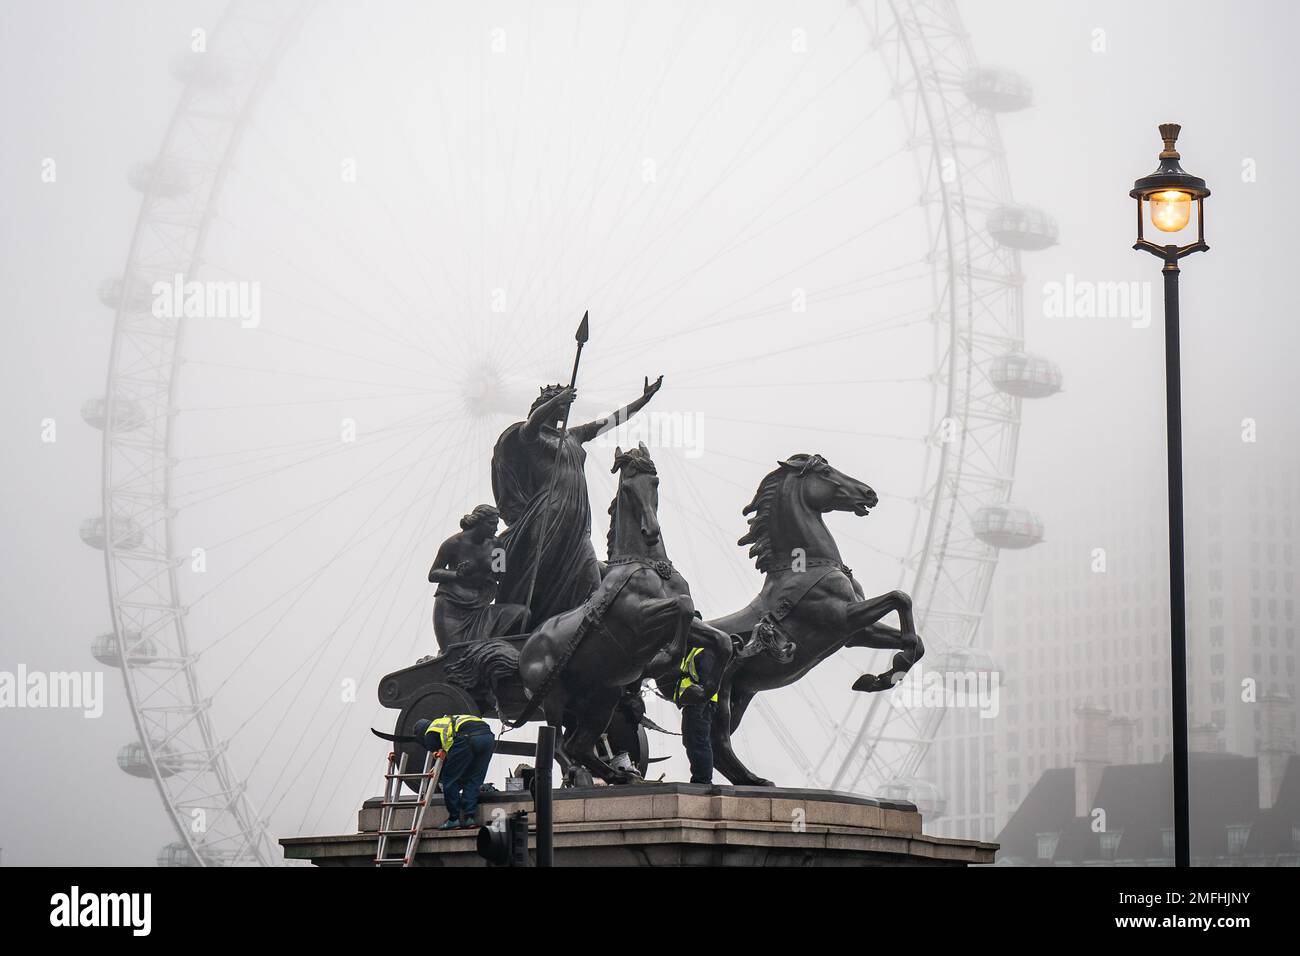 Arbeiter reinigen die Statue des Boudiccan Rebellion am Victoria Embankment, während Nebel das London Eye von lastminute.com am Südufer der Themse in London umgibt. Bilddatum: Mittwoch, 25. Januar 2023. Stockfoto